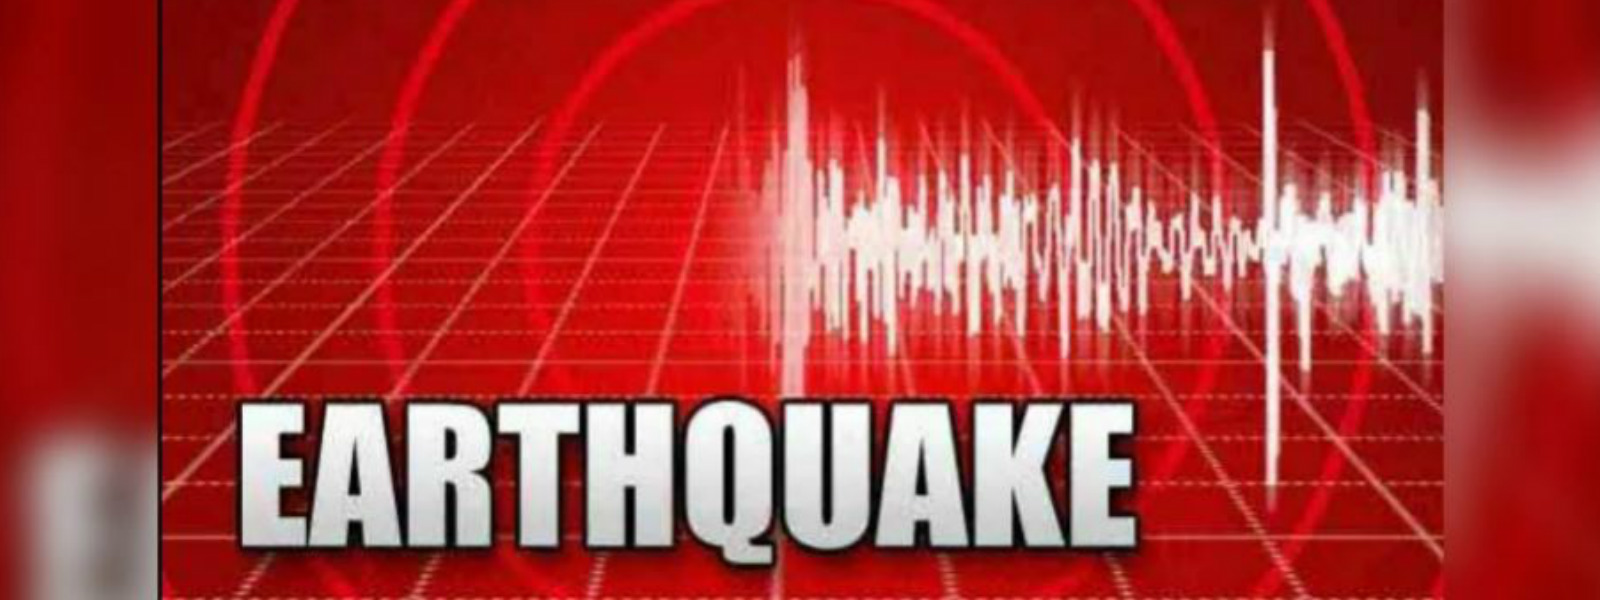 5.4 magnitude quake in the Indian Ocean 